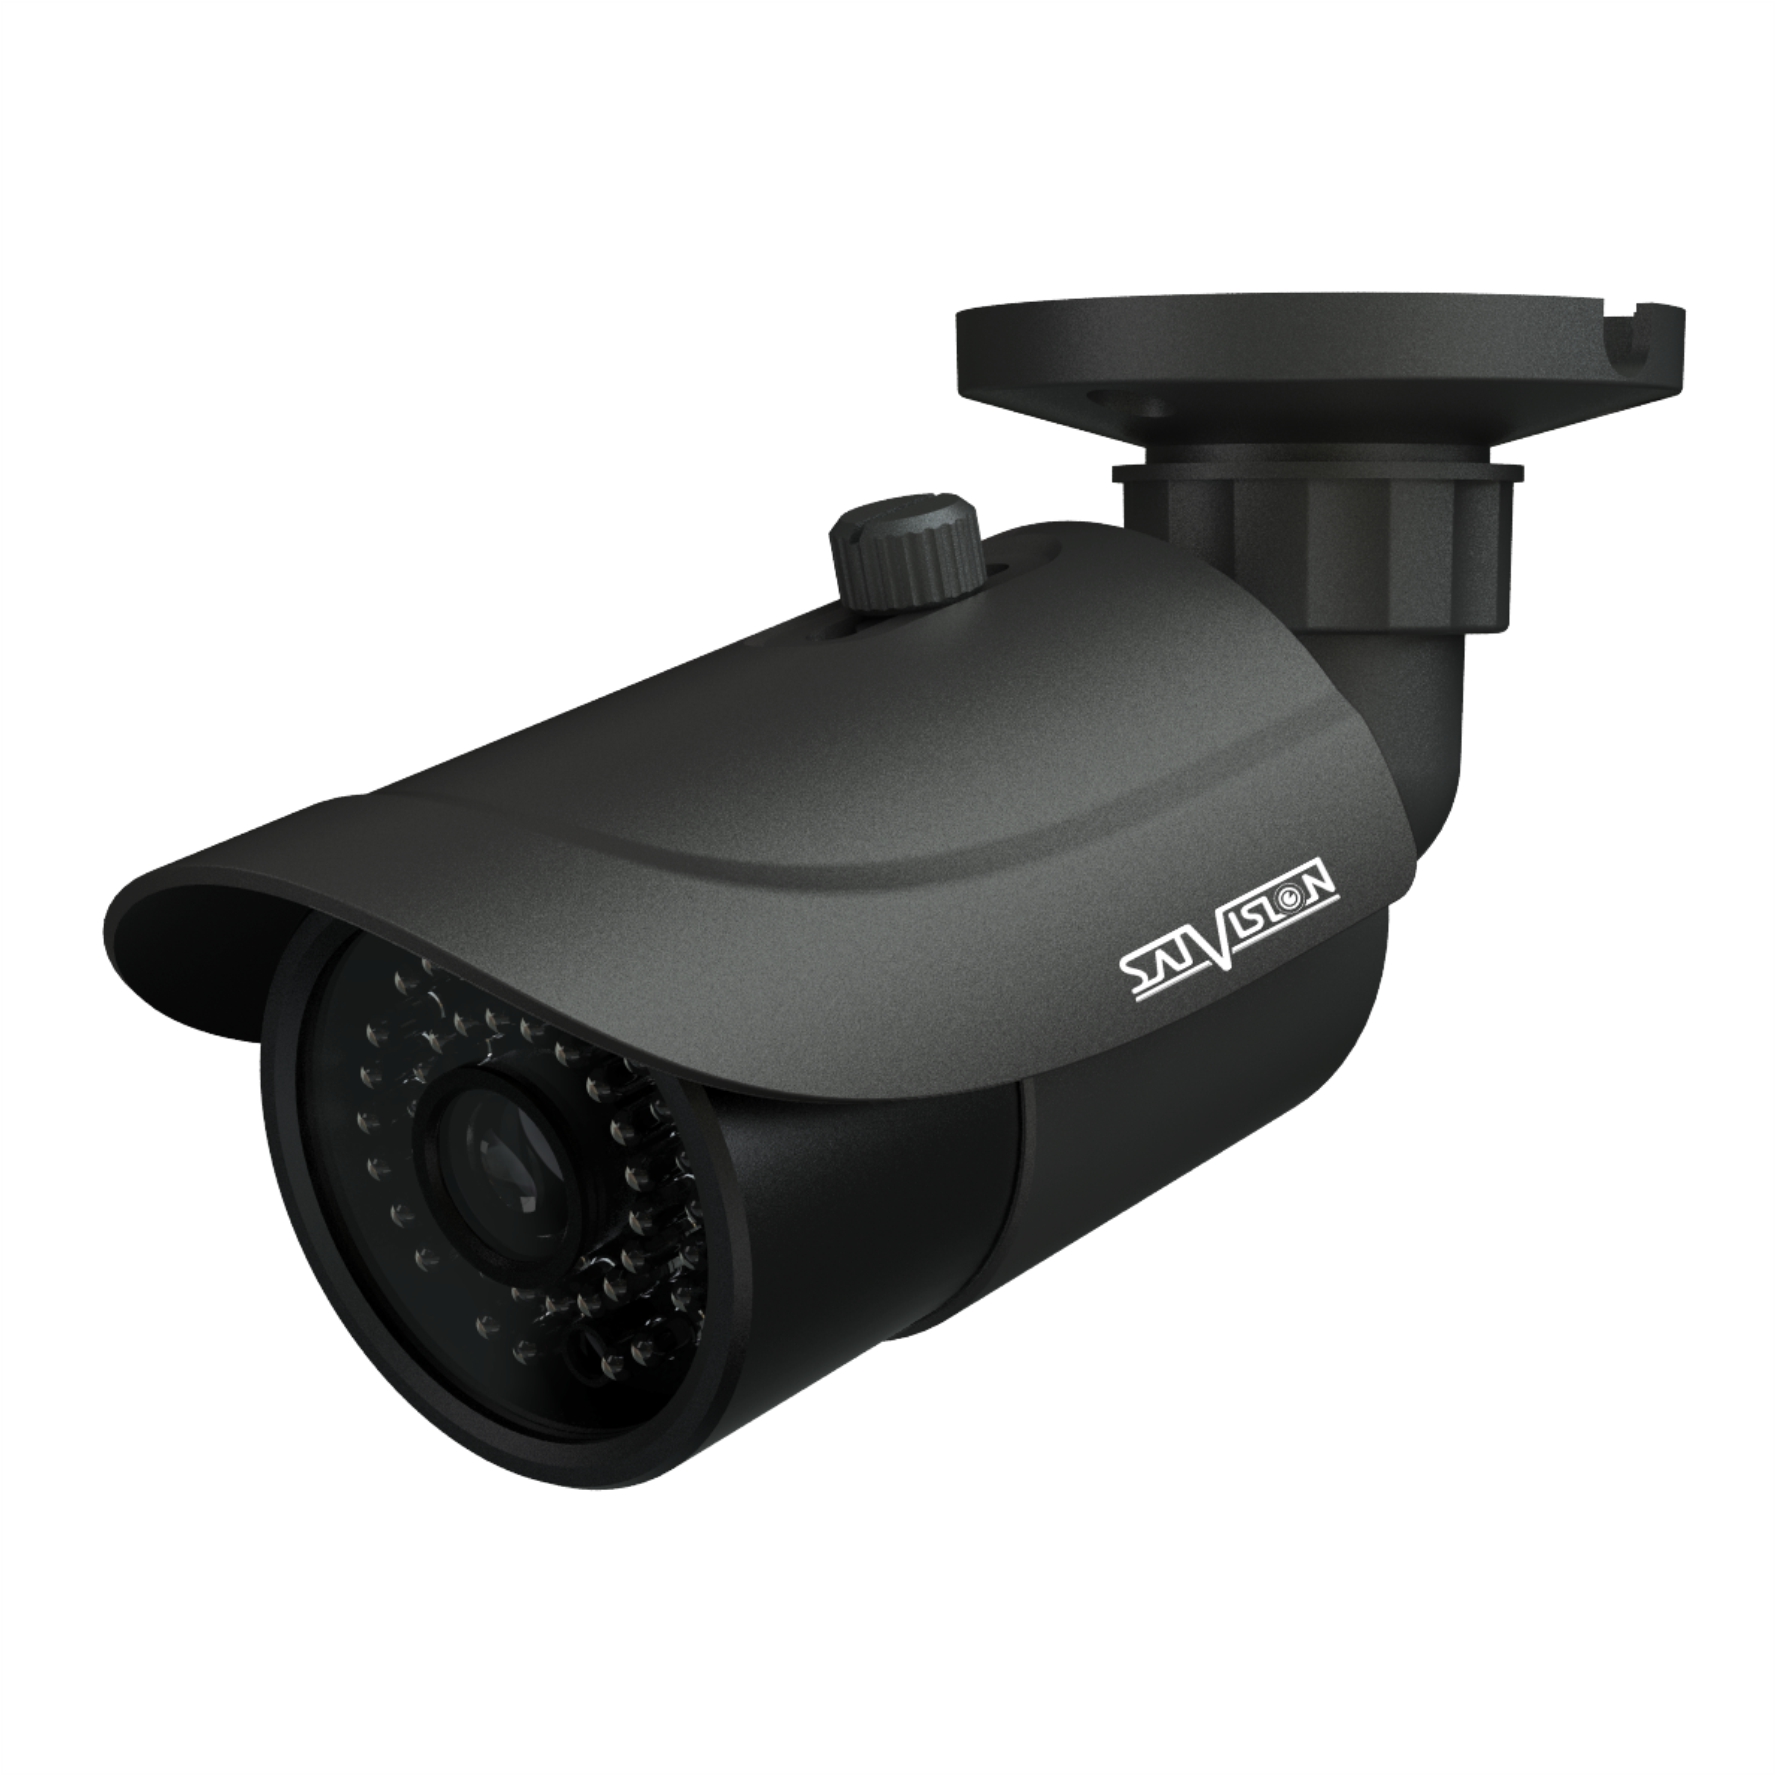 Купить видеонаблюдения для дома спб. Видеокамера svi s342v. Камера IP уличная svi-s352v Pro. SVC-s692v SL 2 Mpix 2.8-12mm OSD видеокамера AHD. IP видеокамера svi-s183.